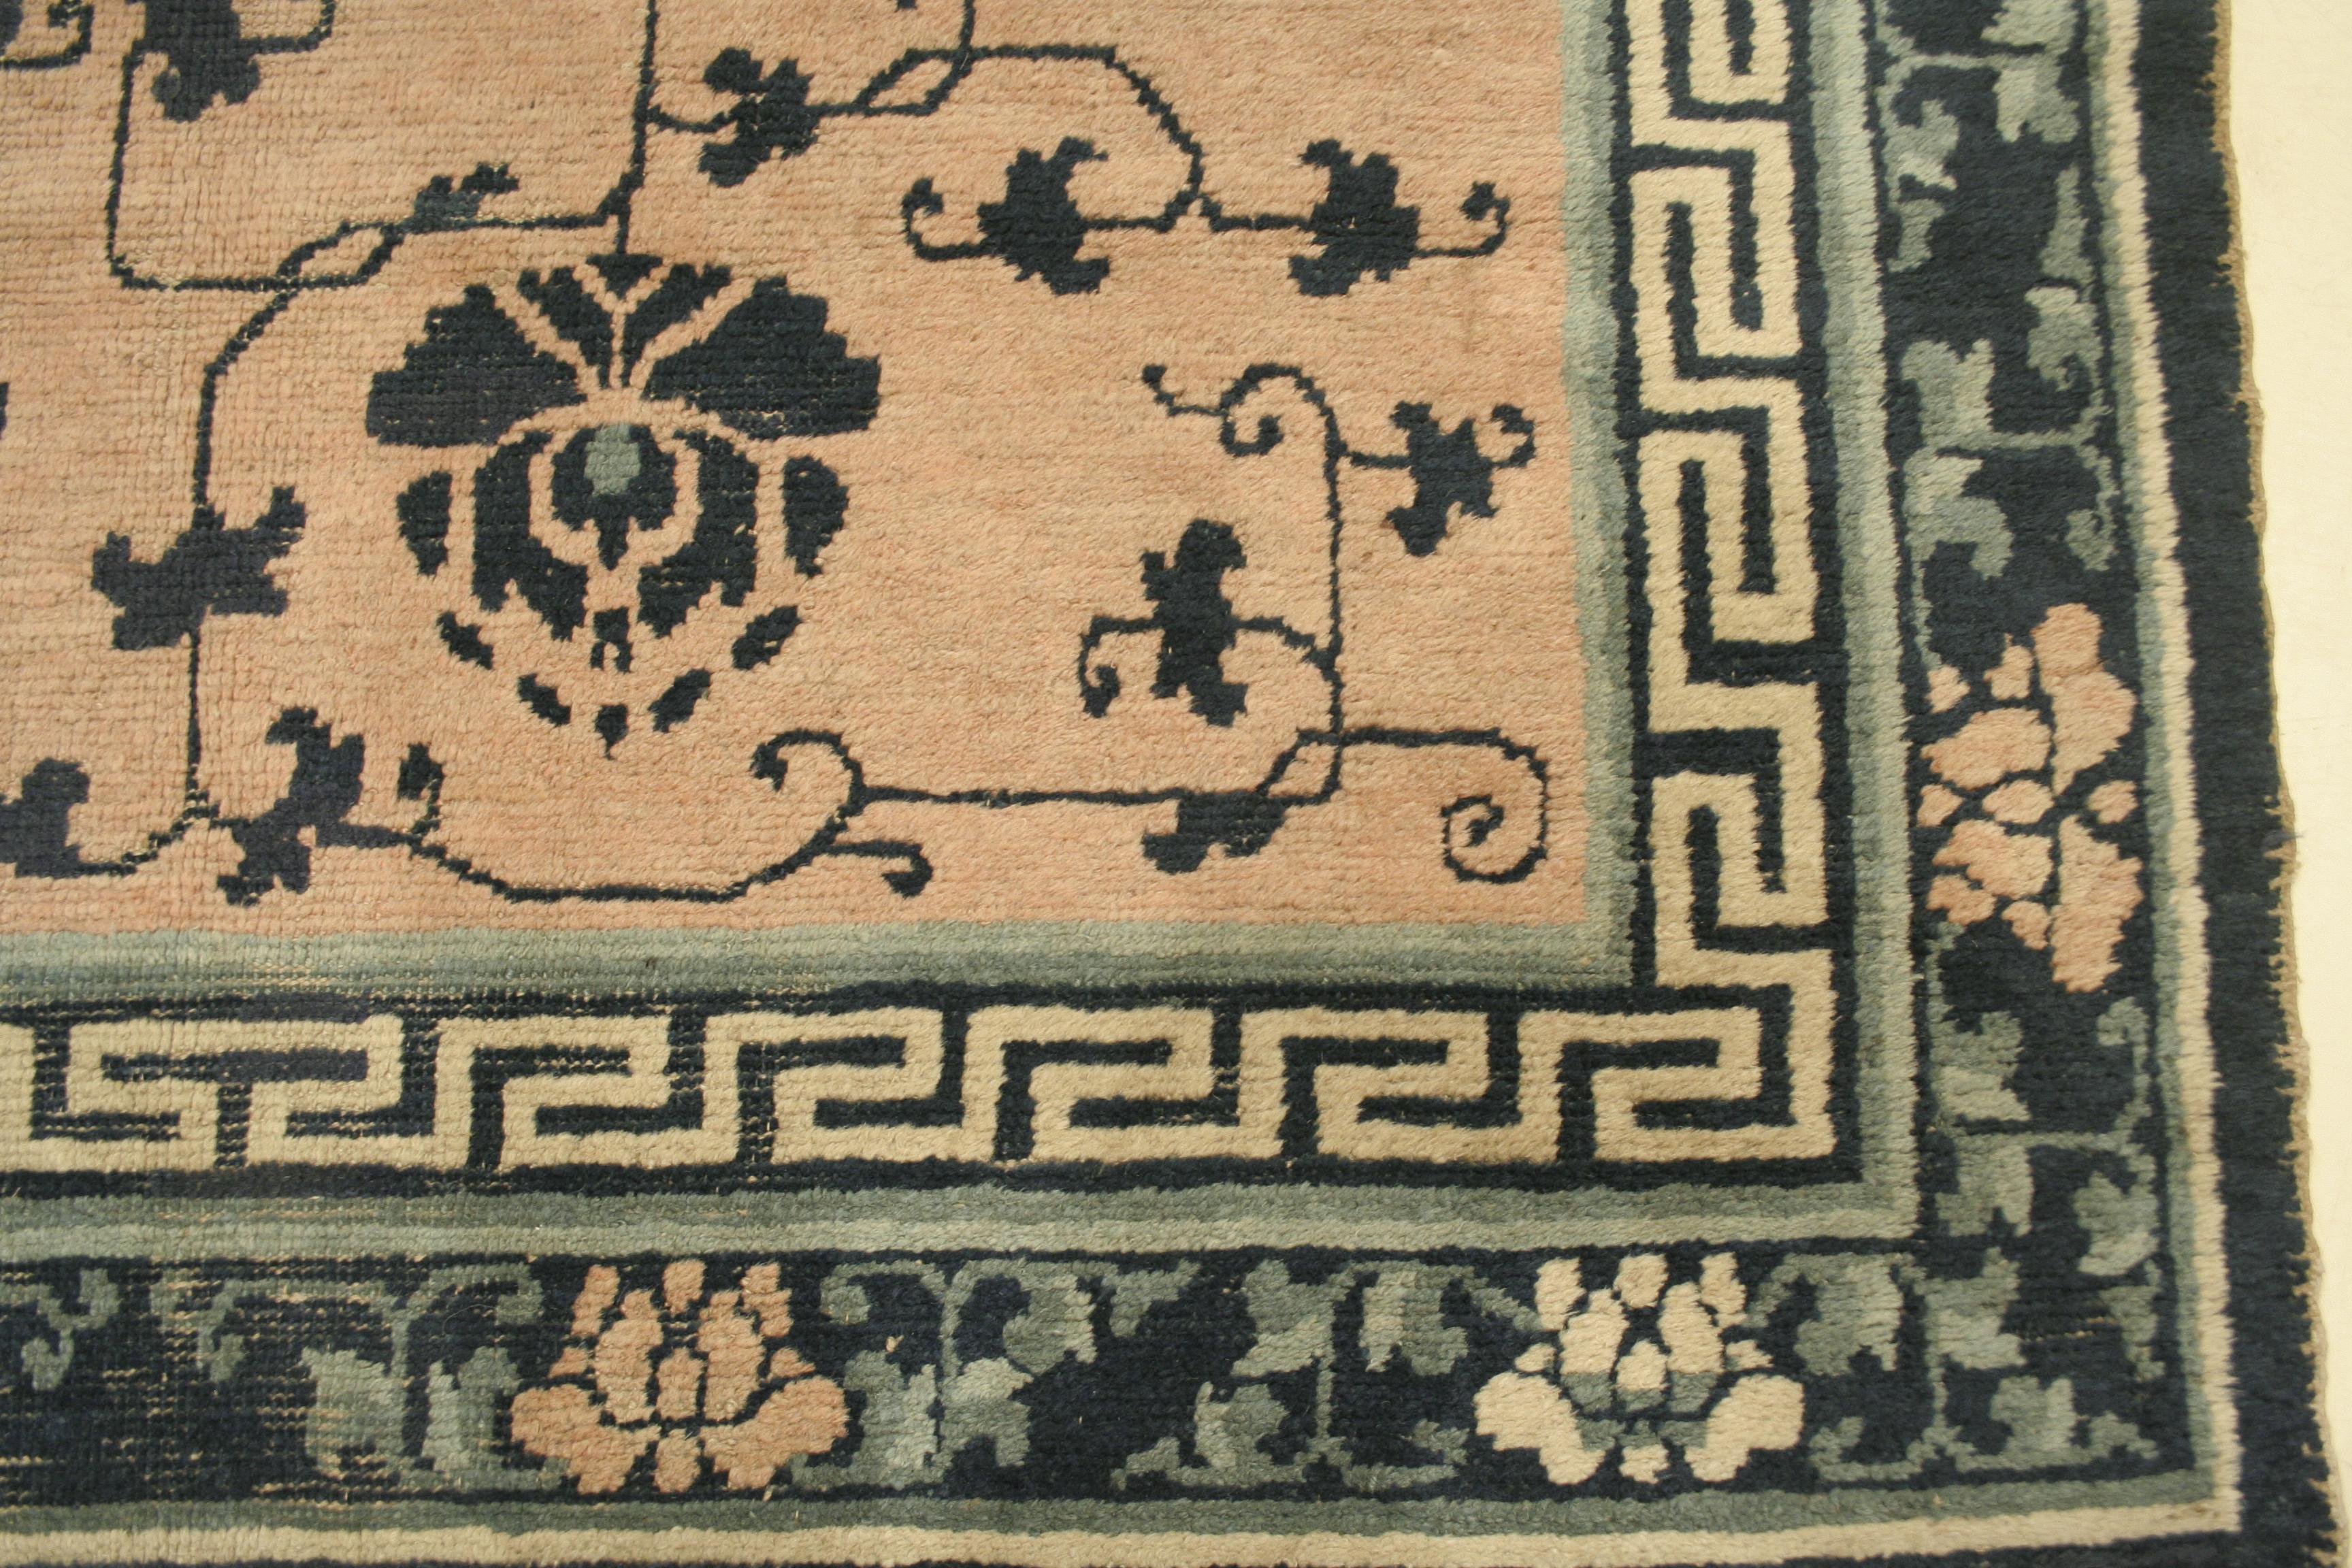 Ce rare tapis de Ningxia présente un fond rose pâle décoré d'un motif directionnel de grandes fleurs de lotus bleues, symboles de longue vie, reliées par une fine vigne feuillue. La bordure bleue est ornée de pivoines en ivoire et en rose, et la